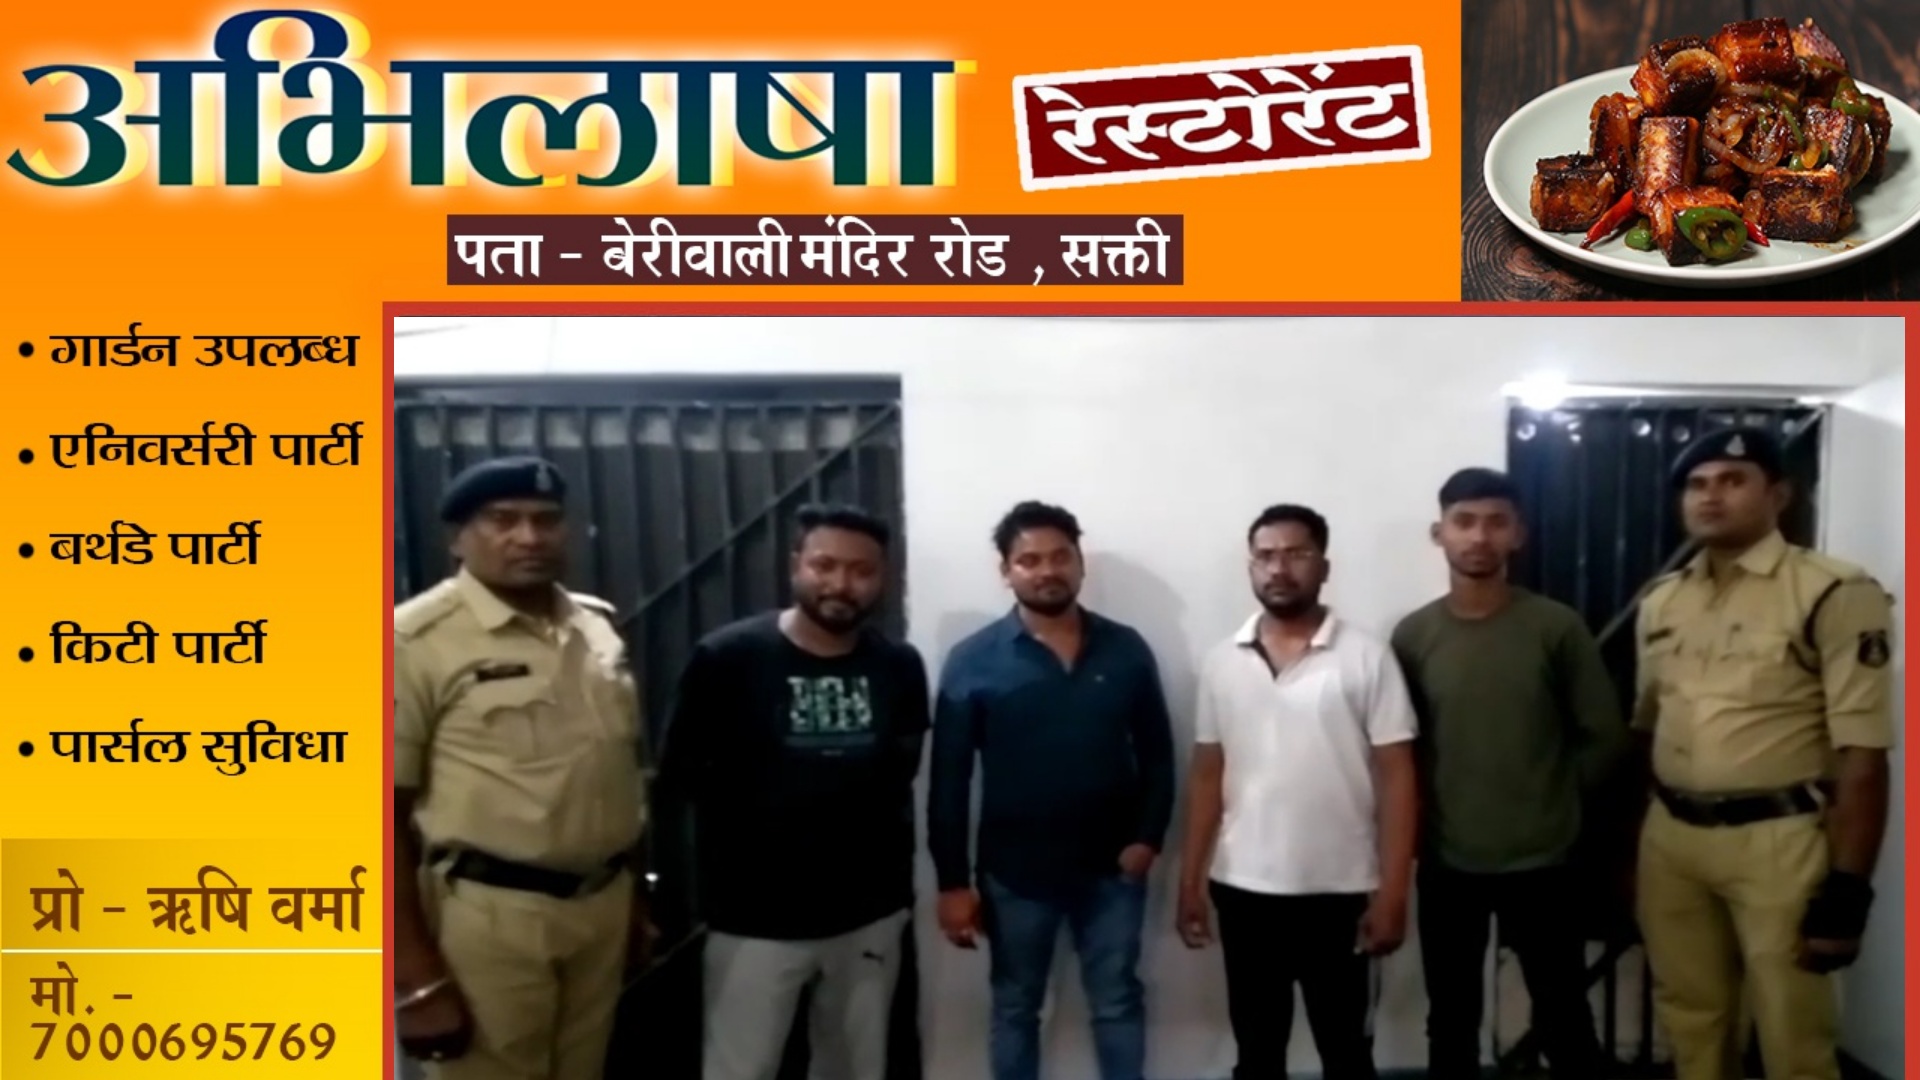 जांजगीर चाम्पा - IPL में दांव लगवाते चार सटोरिये गिरफ्तार , सभी को भेजा गया जेल